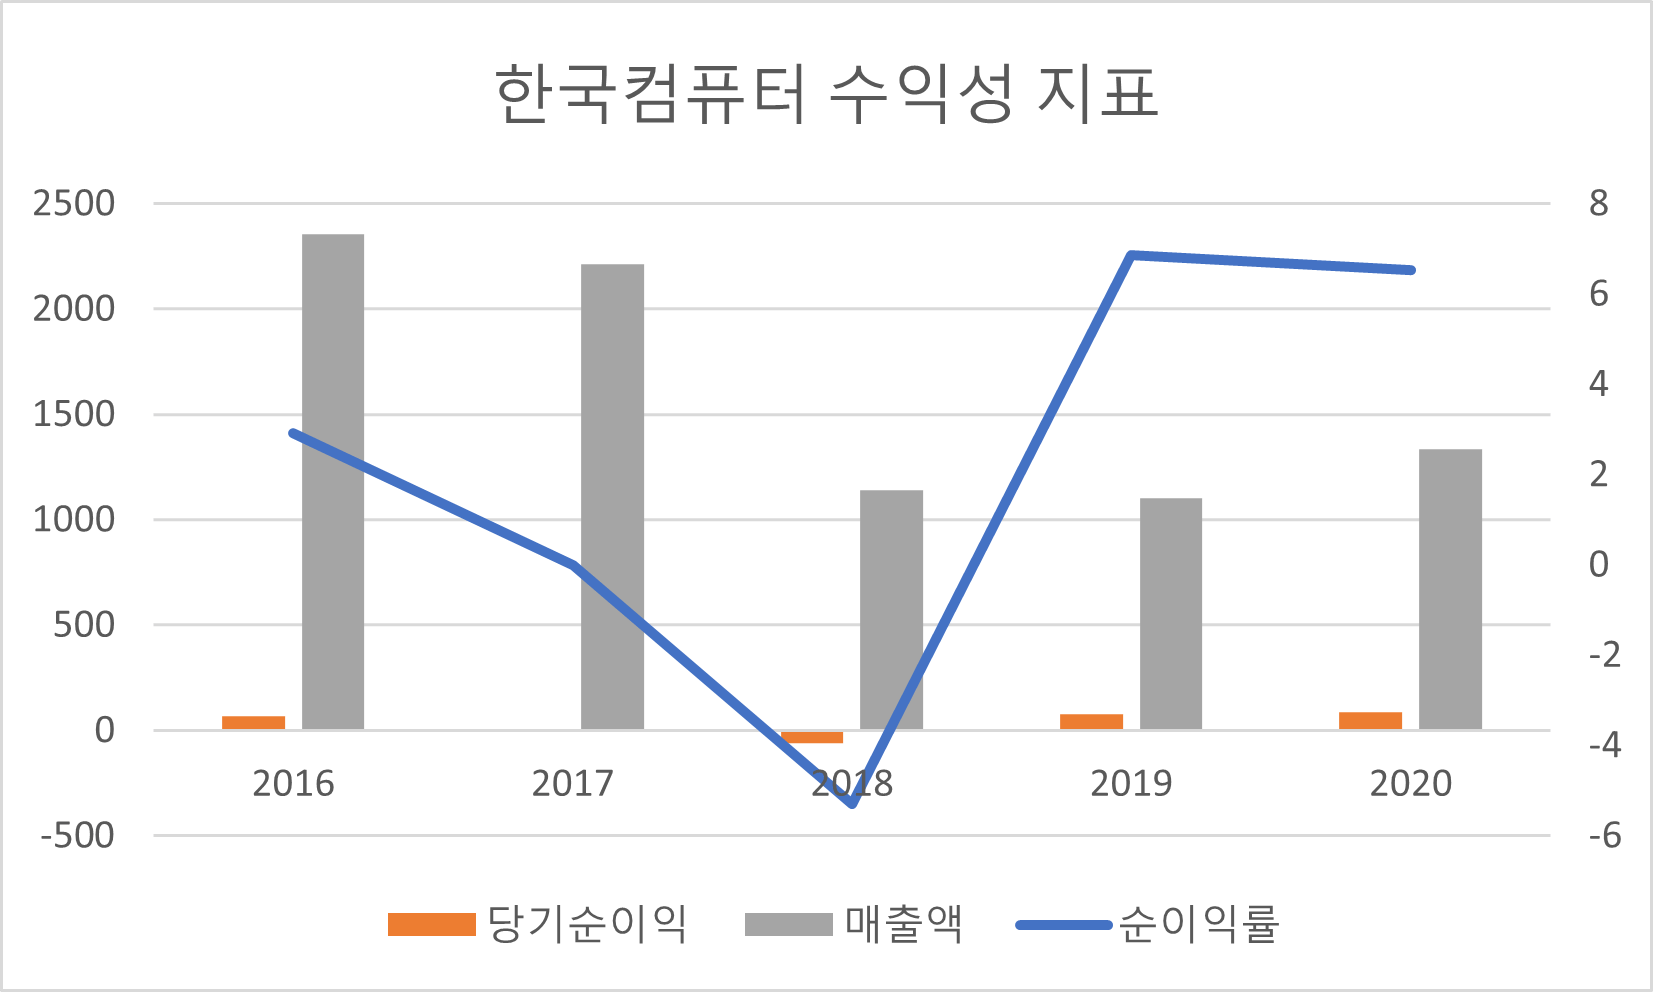 한국컴퓨터 수익성 지표